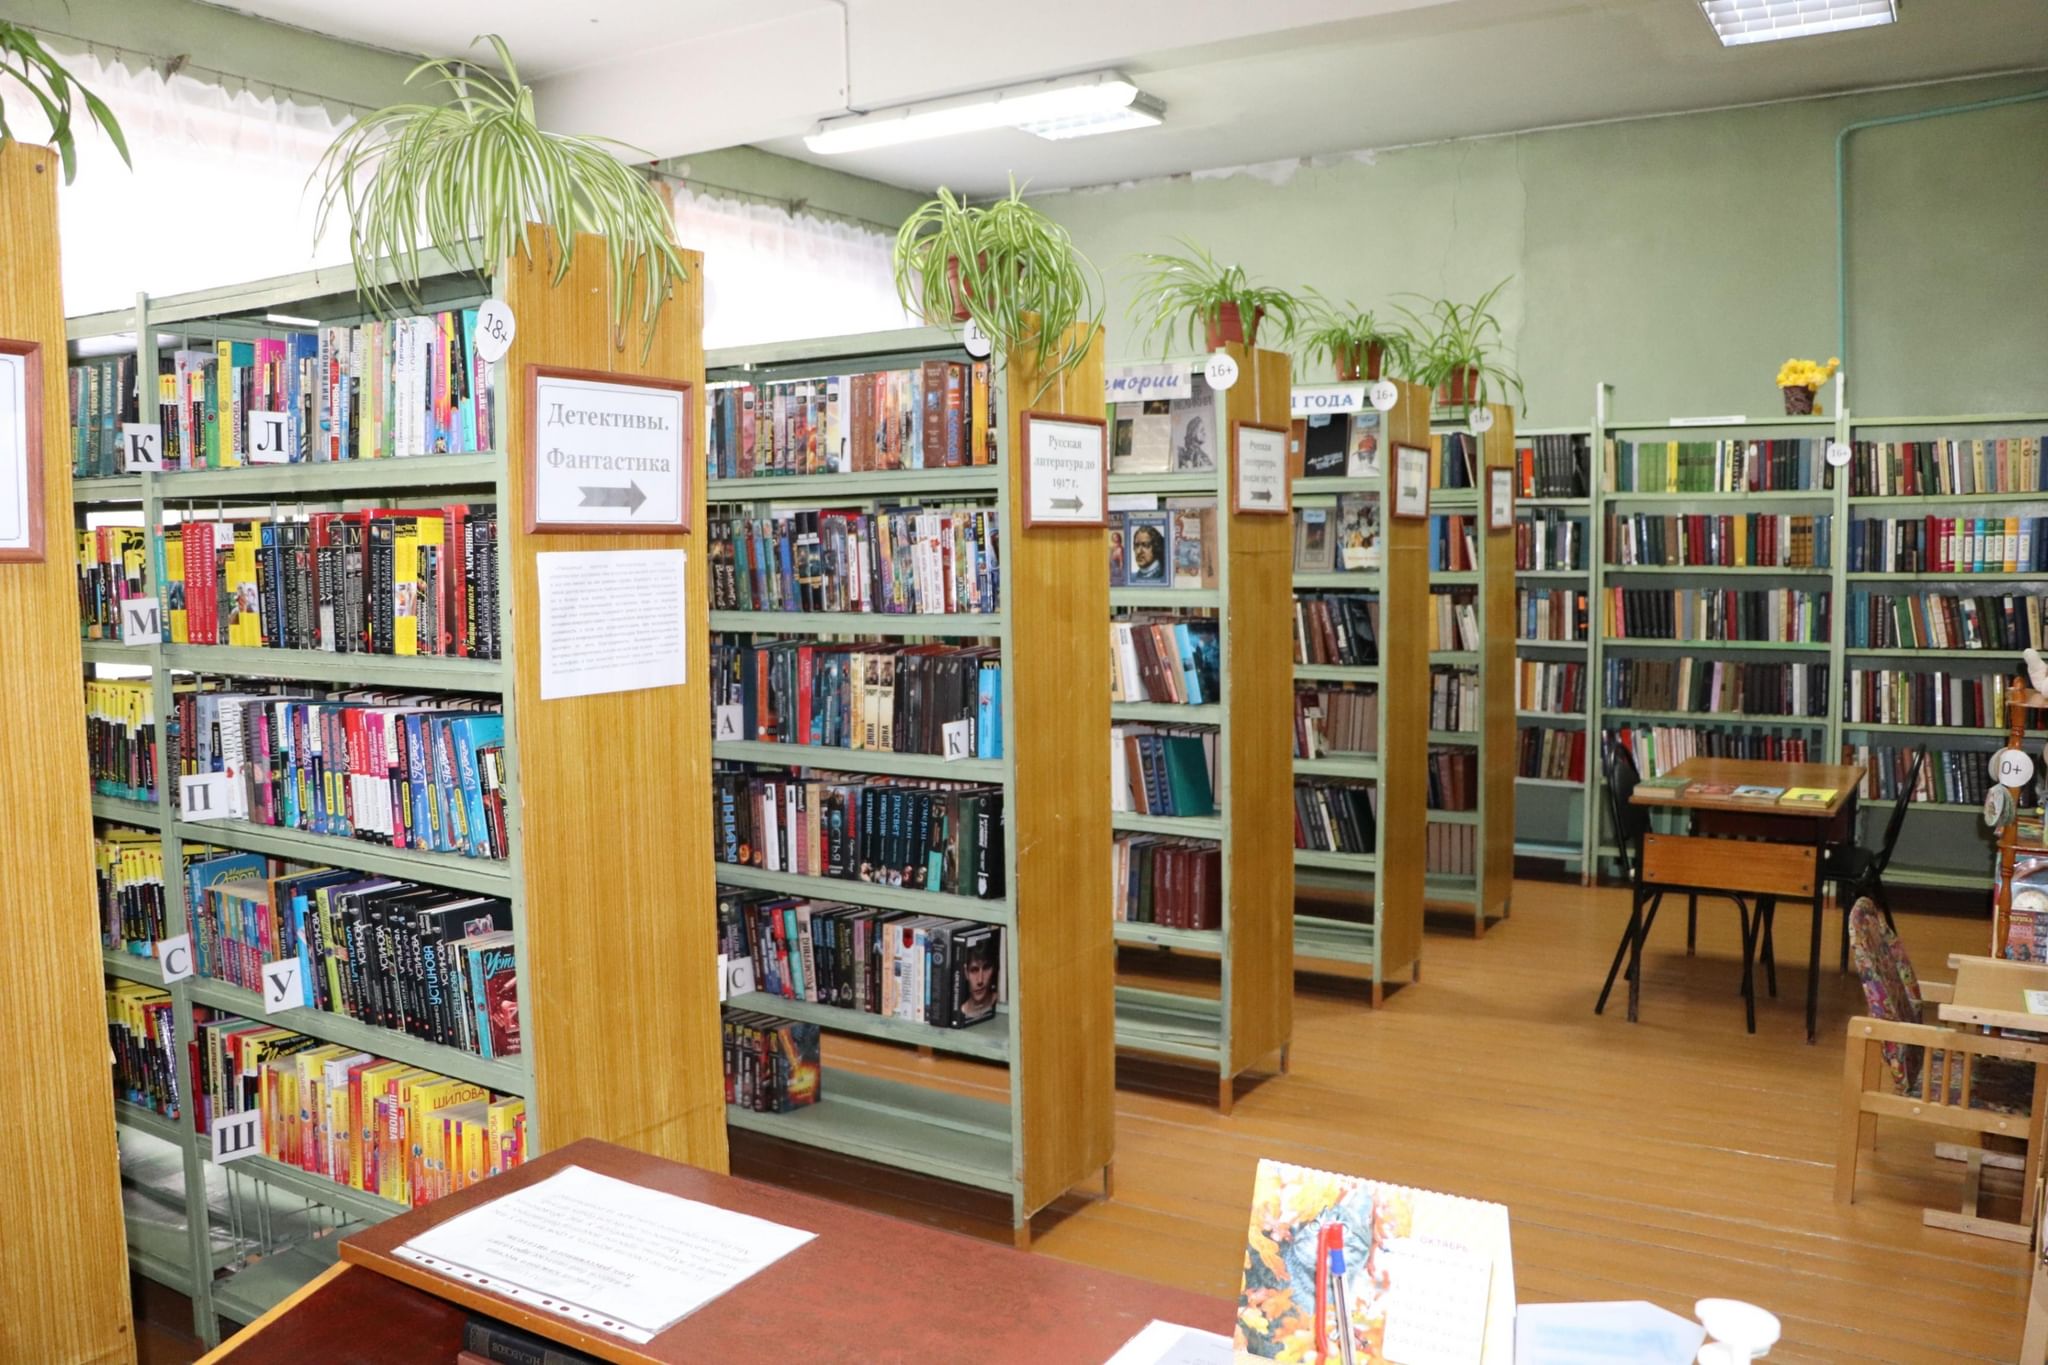 Тульская библиотека. Библиотека на Тульской в Тюмени. Выставки в библиотеке Тульская область. Тульские библиотеки сайт